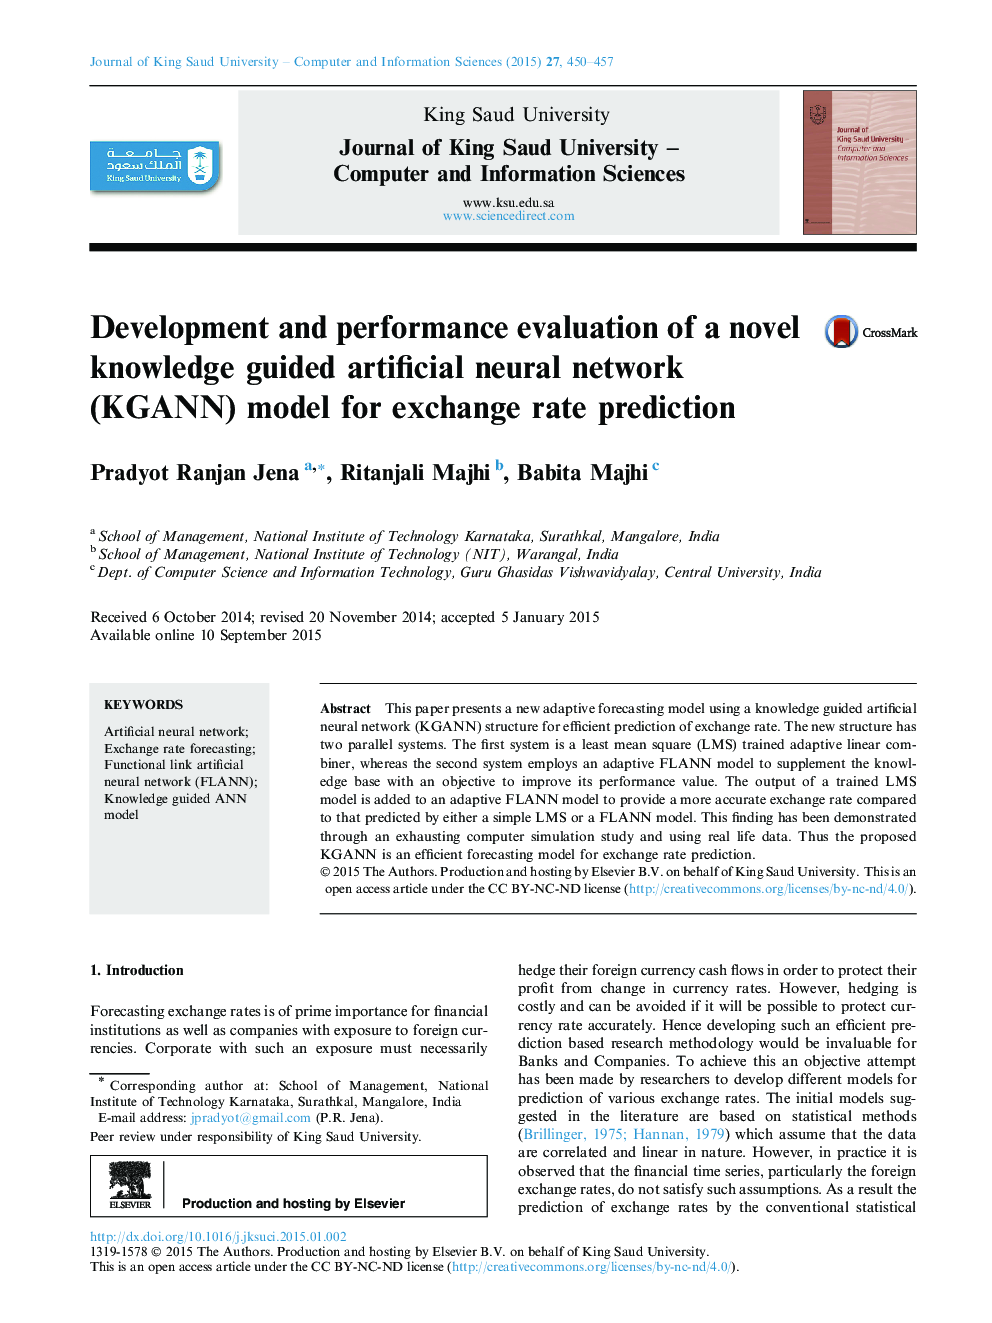 ارزیابی توسعه و عملکرد یک مدل شبکه عصبی مصنوعی هدایت شده با دانش (KGANN) برای پیش بینی نرخ تسعیر 